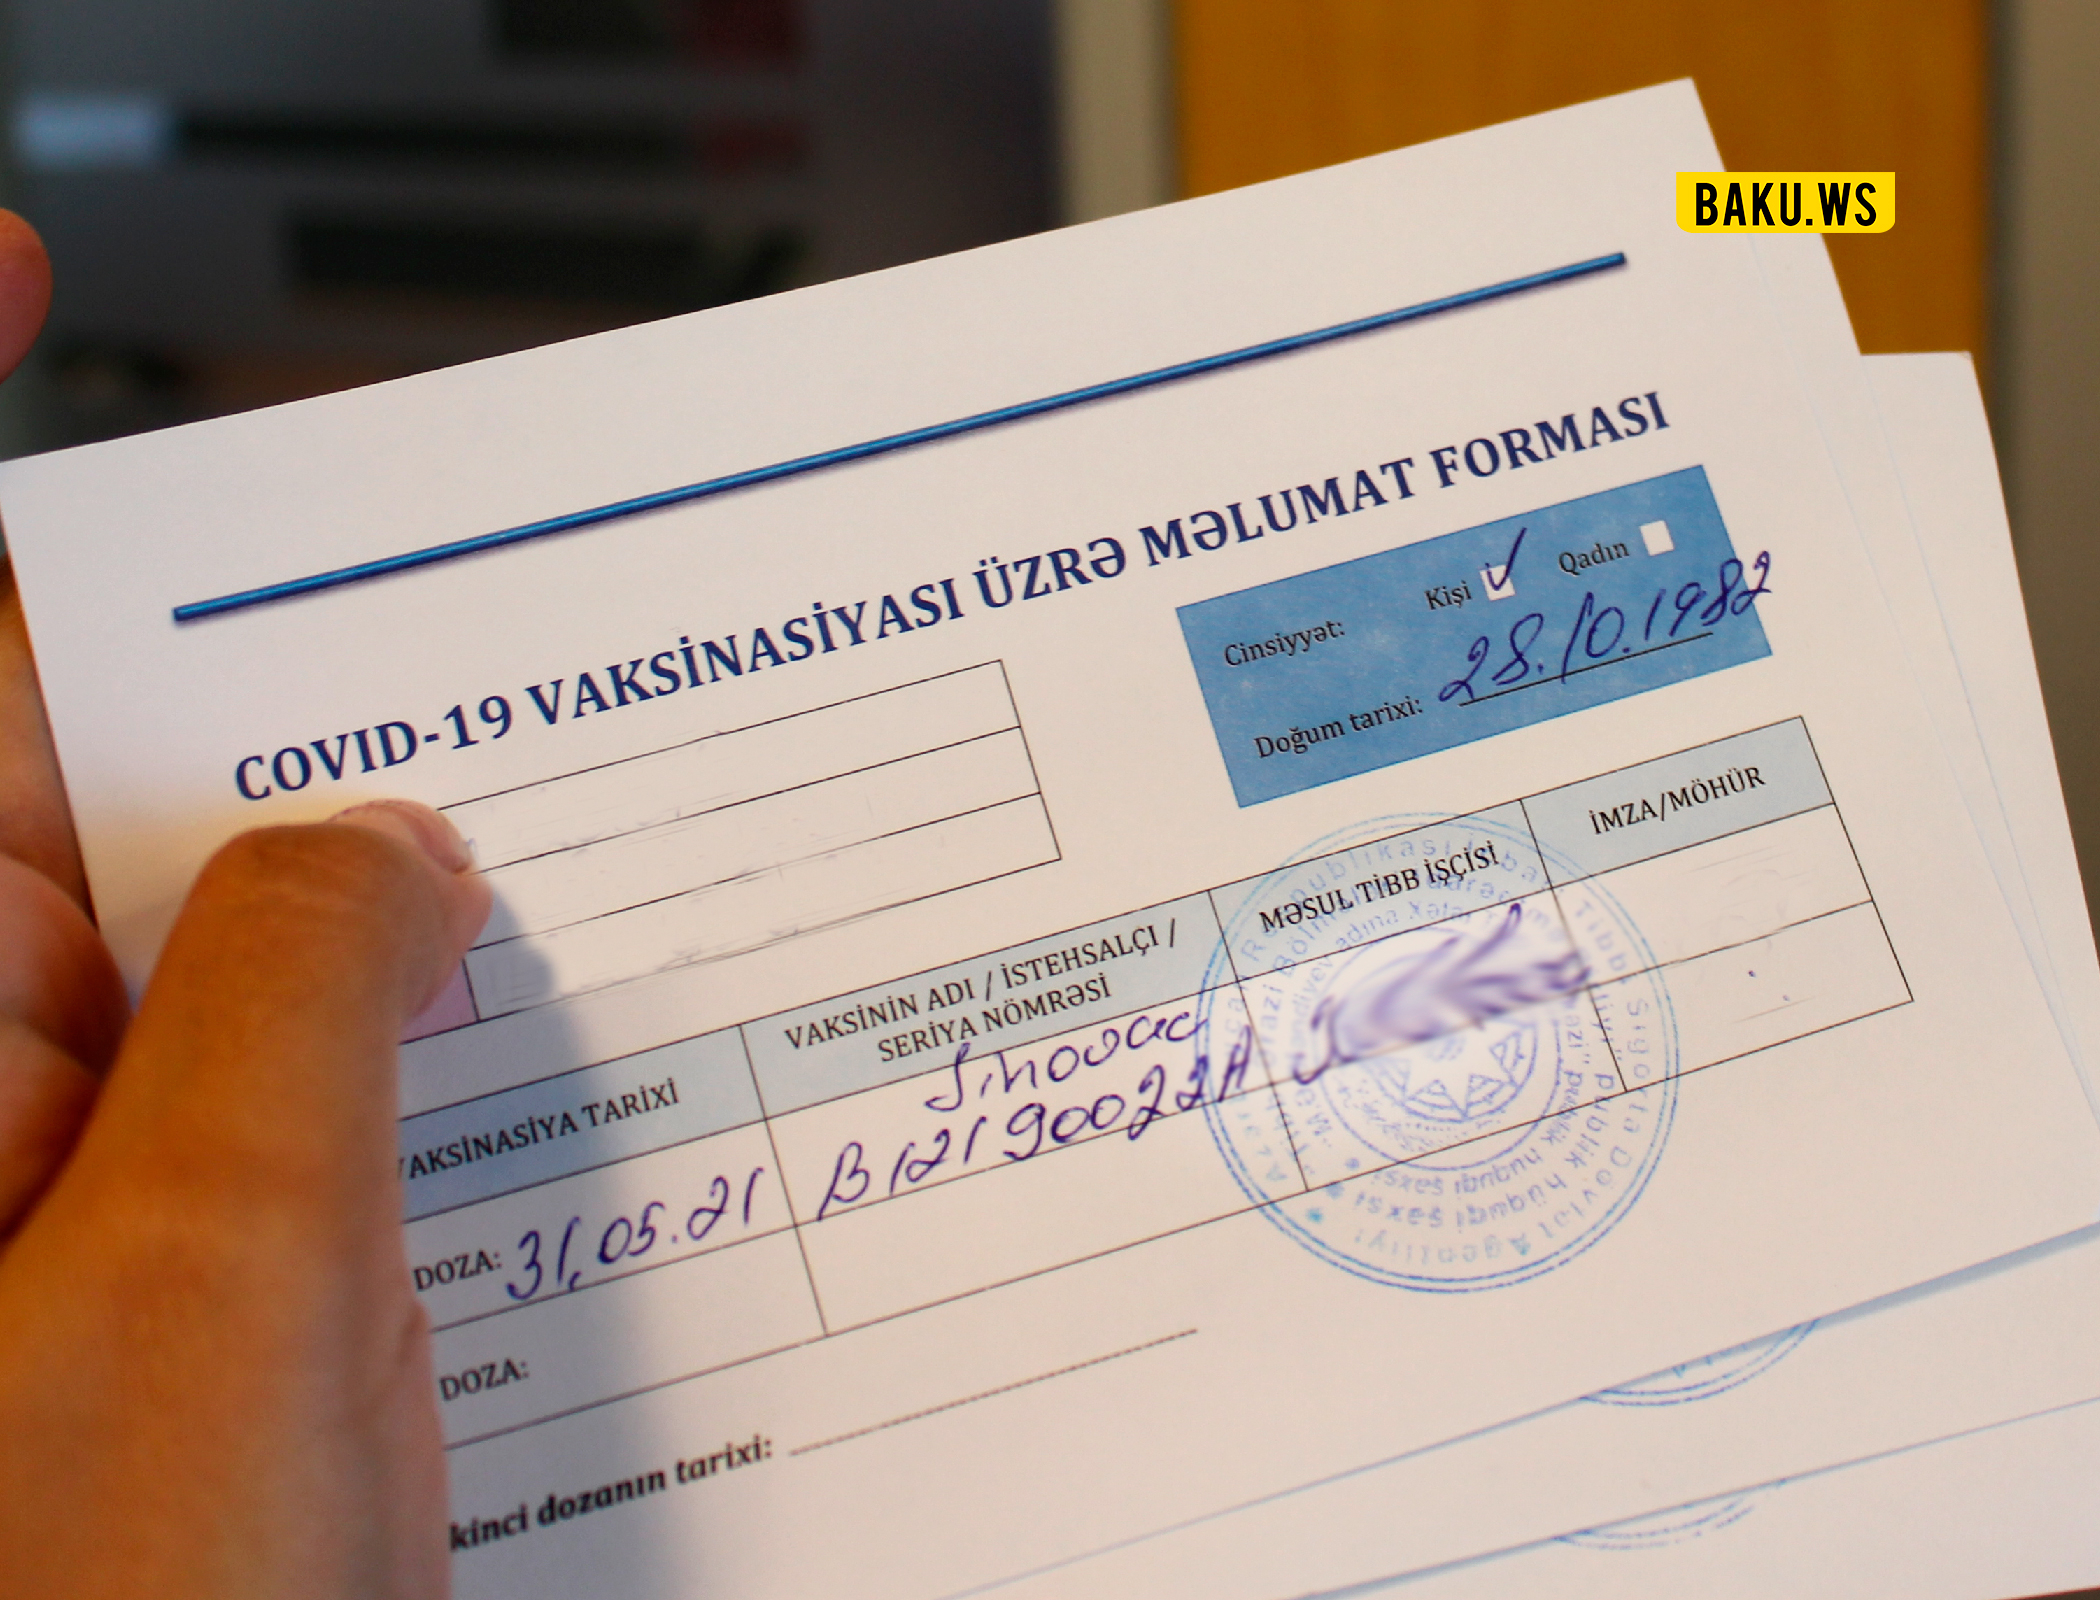 В 4 медучреждениях Баку выявлена продажа поддельных ковид-паспортов - ВИДЕО